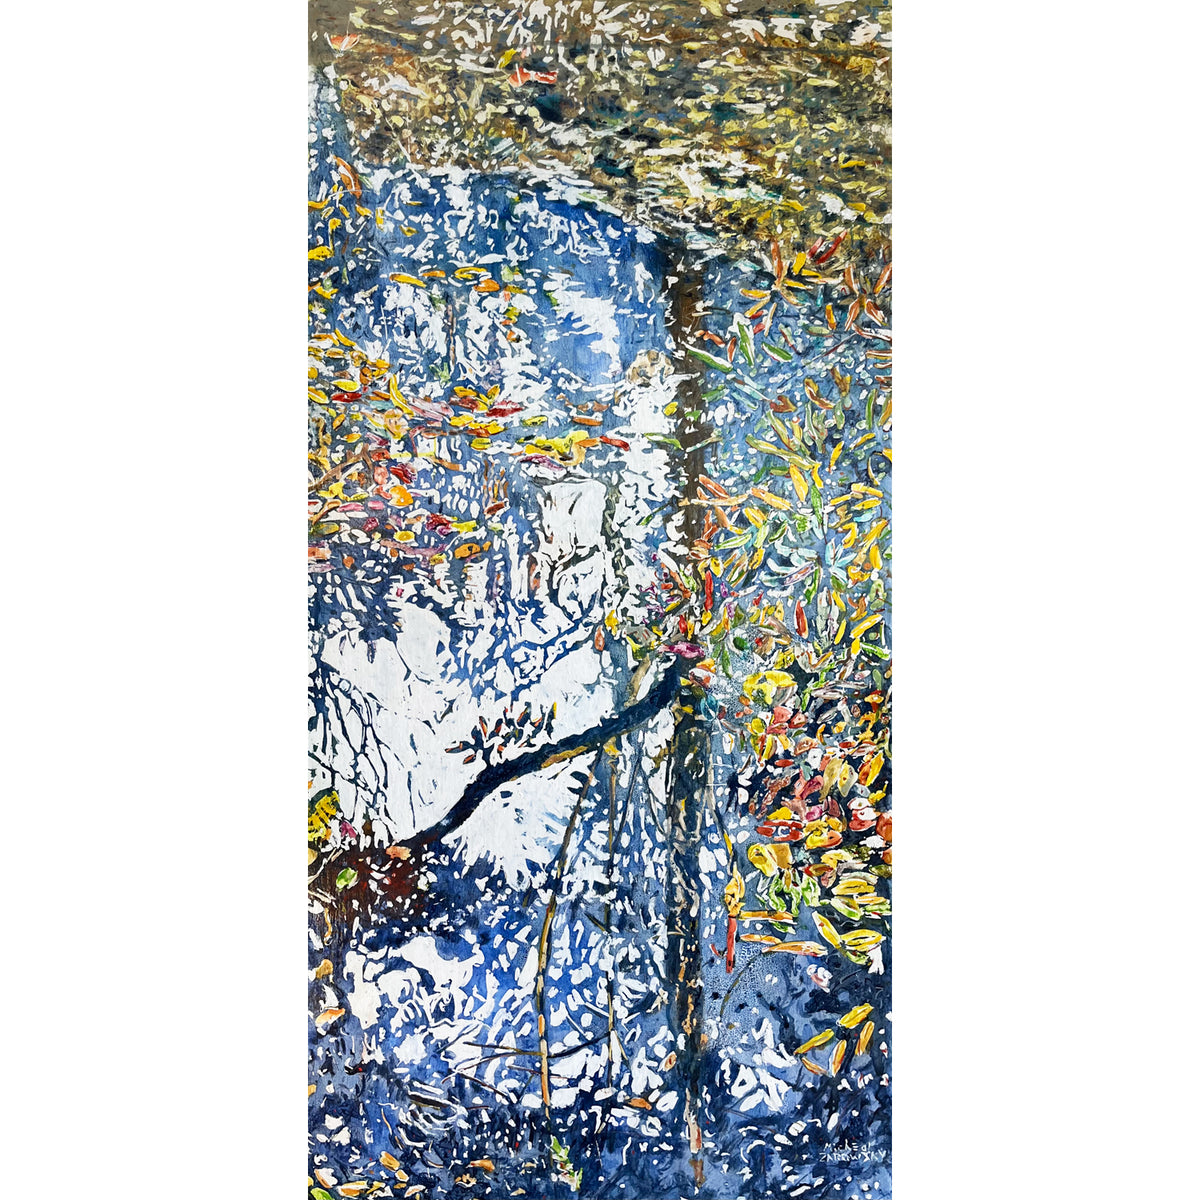 Micheal Zarowsky - Autumn Pond, 48" x 24"